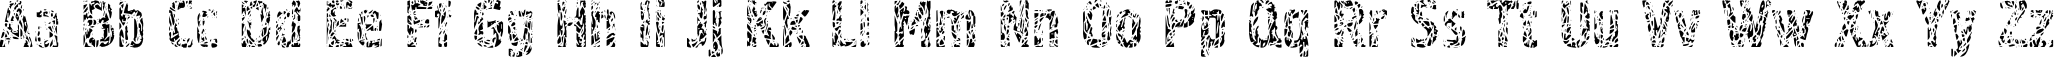 Пример написания английского алфавита шрифтом Pollock4C